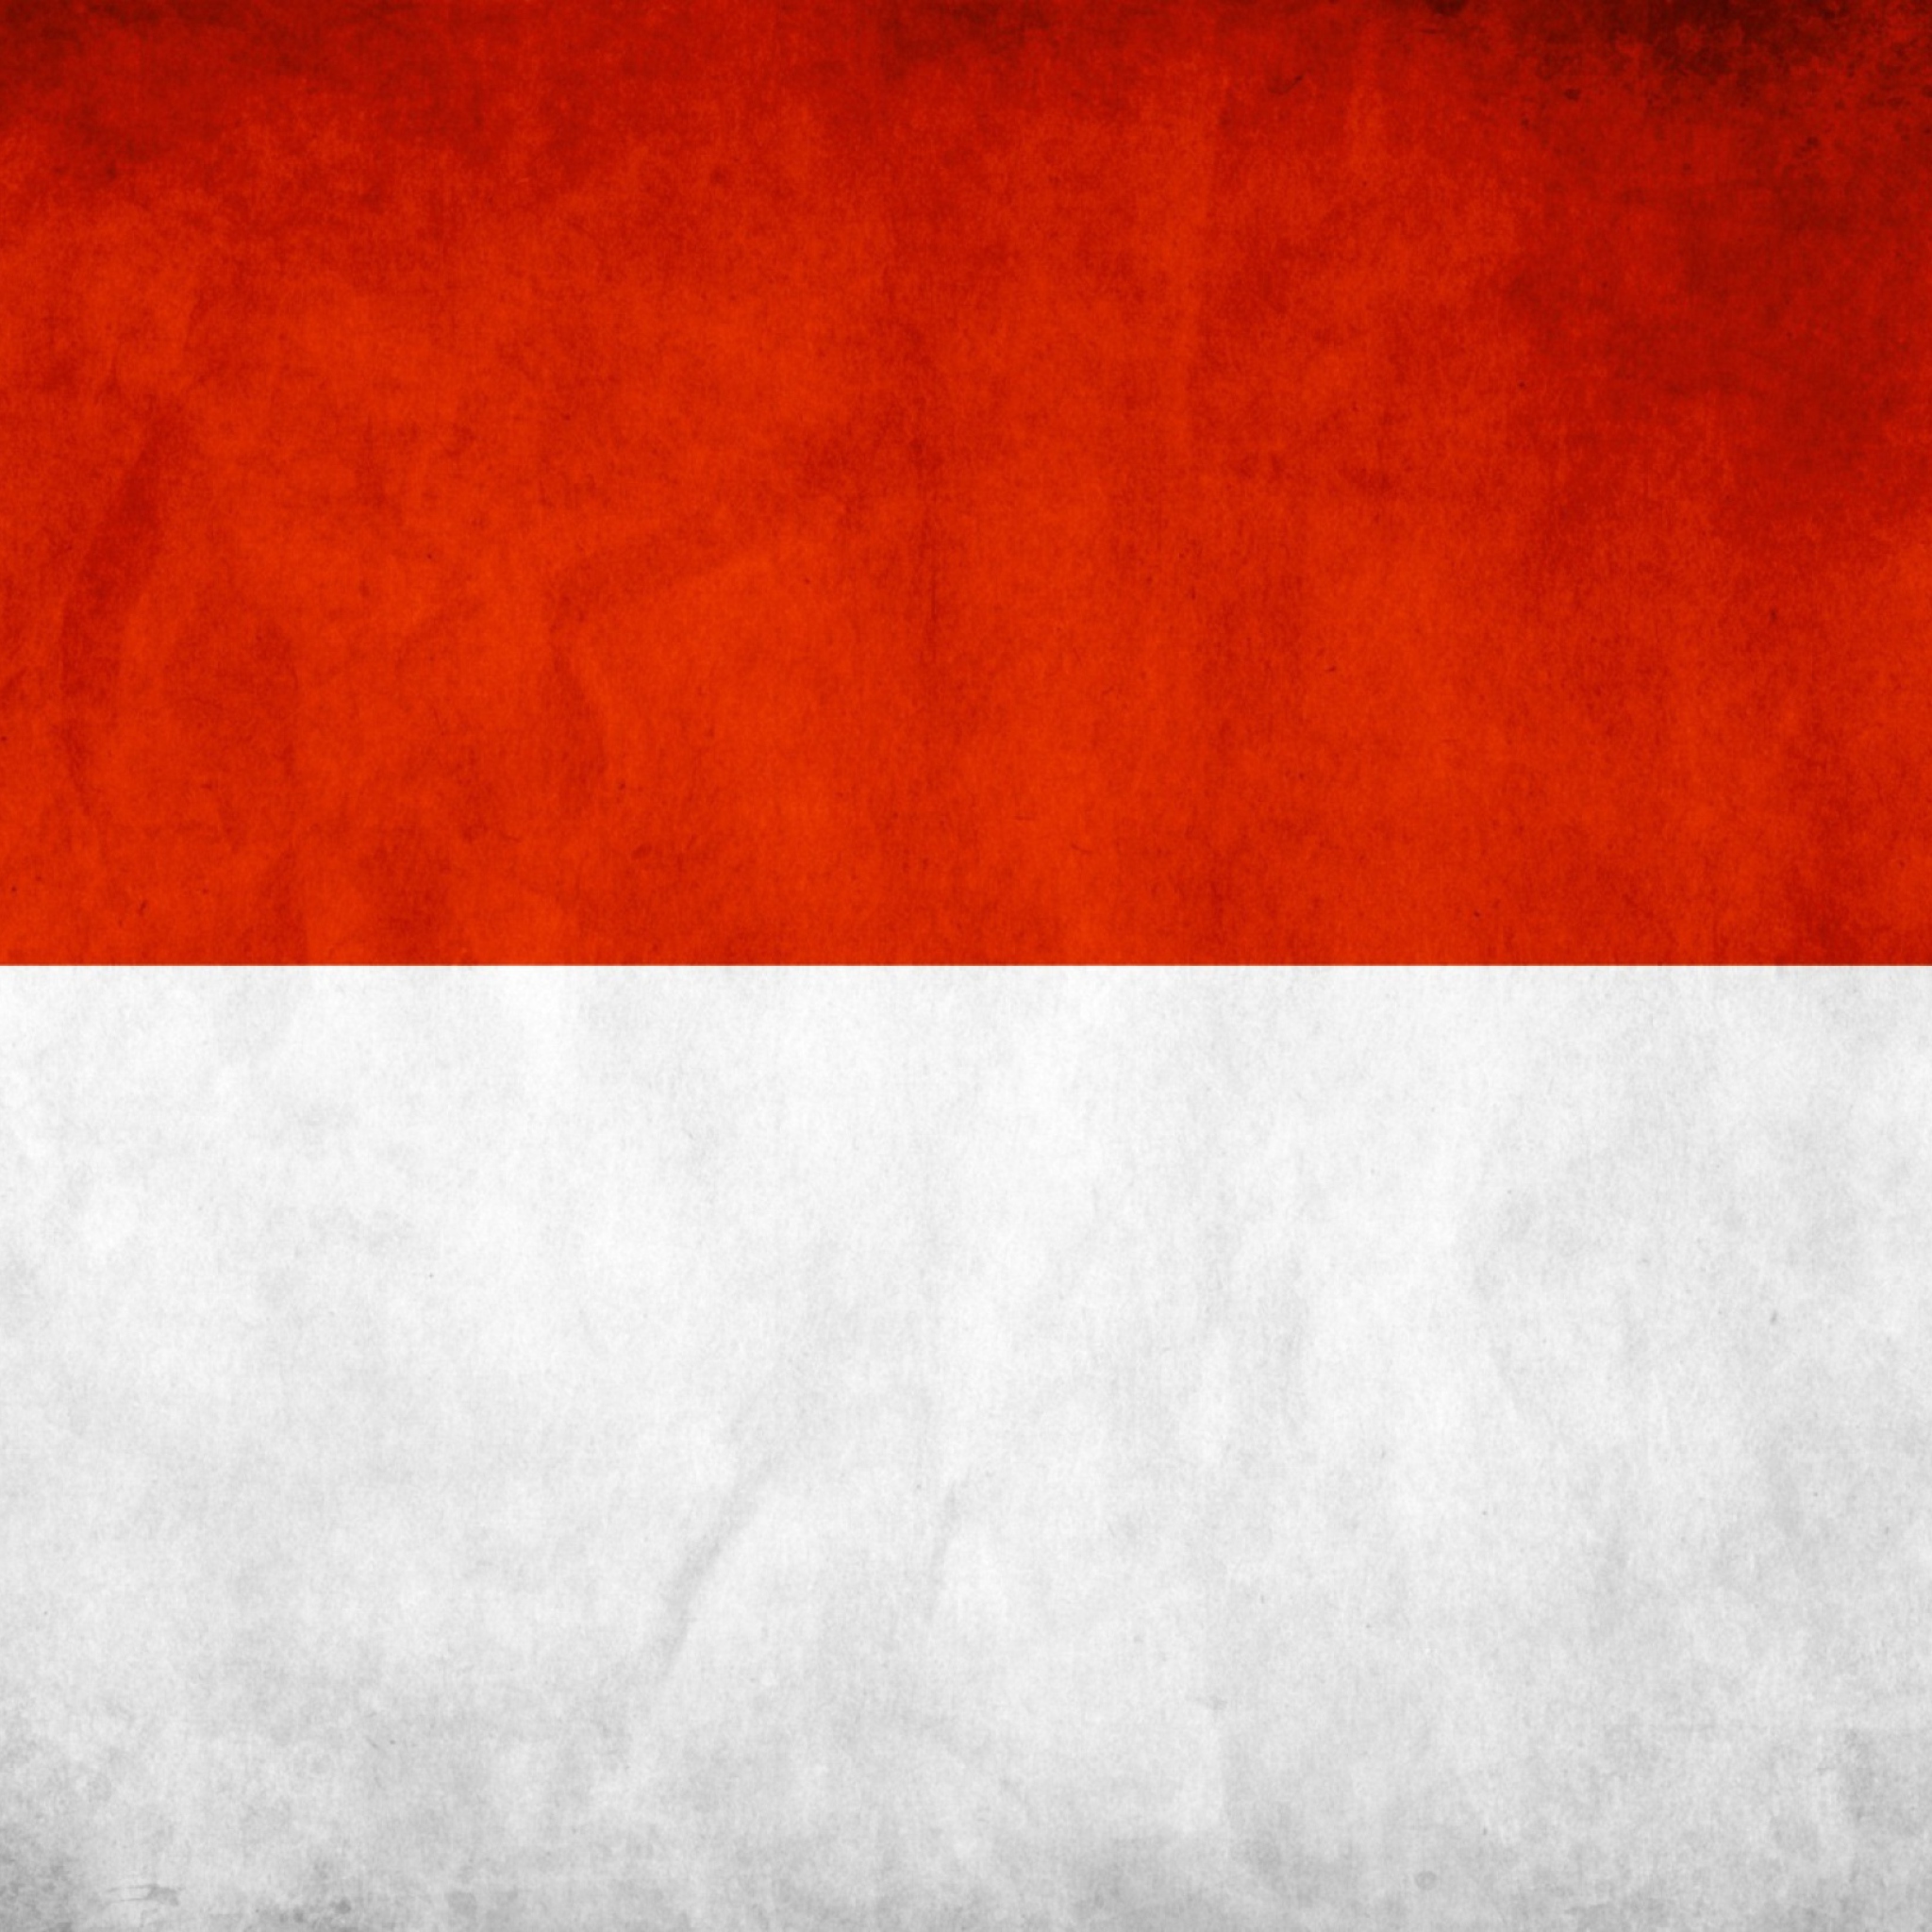 Обои Indonesia Grunge Flag 2048x2048